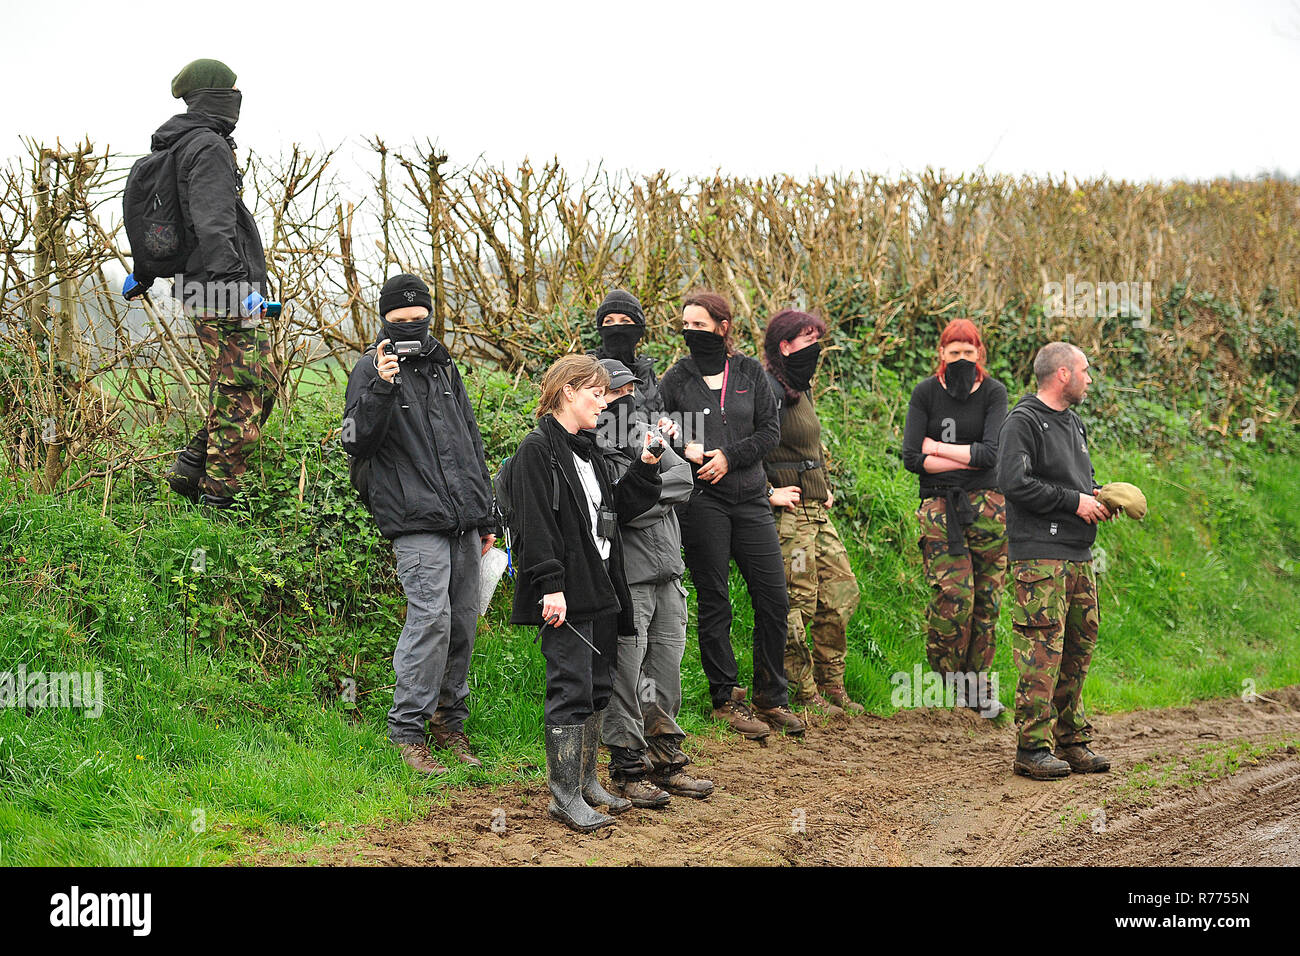 Jagd saboteure Bildaufnahmen und protestieren gegen die Jagd Stockfoto